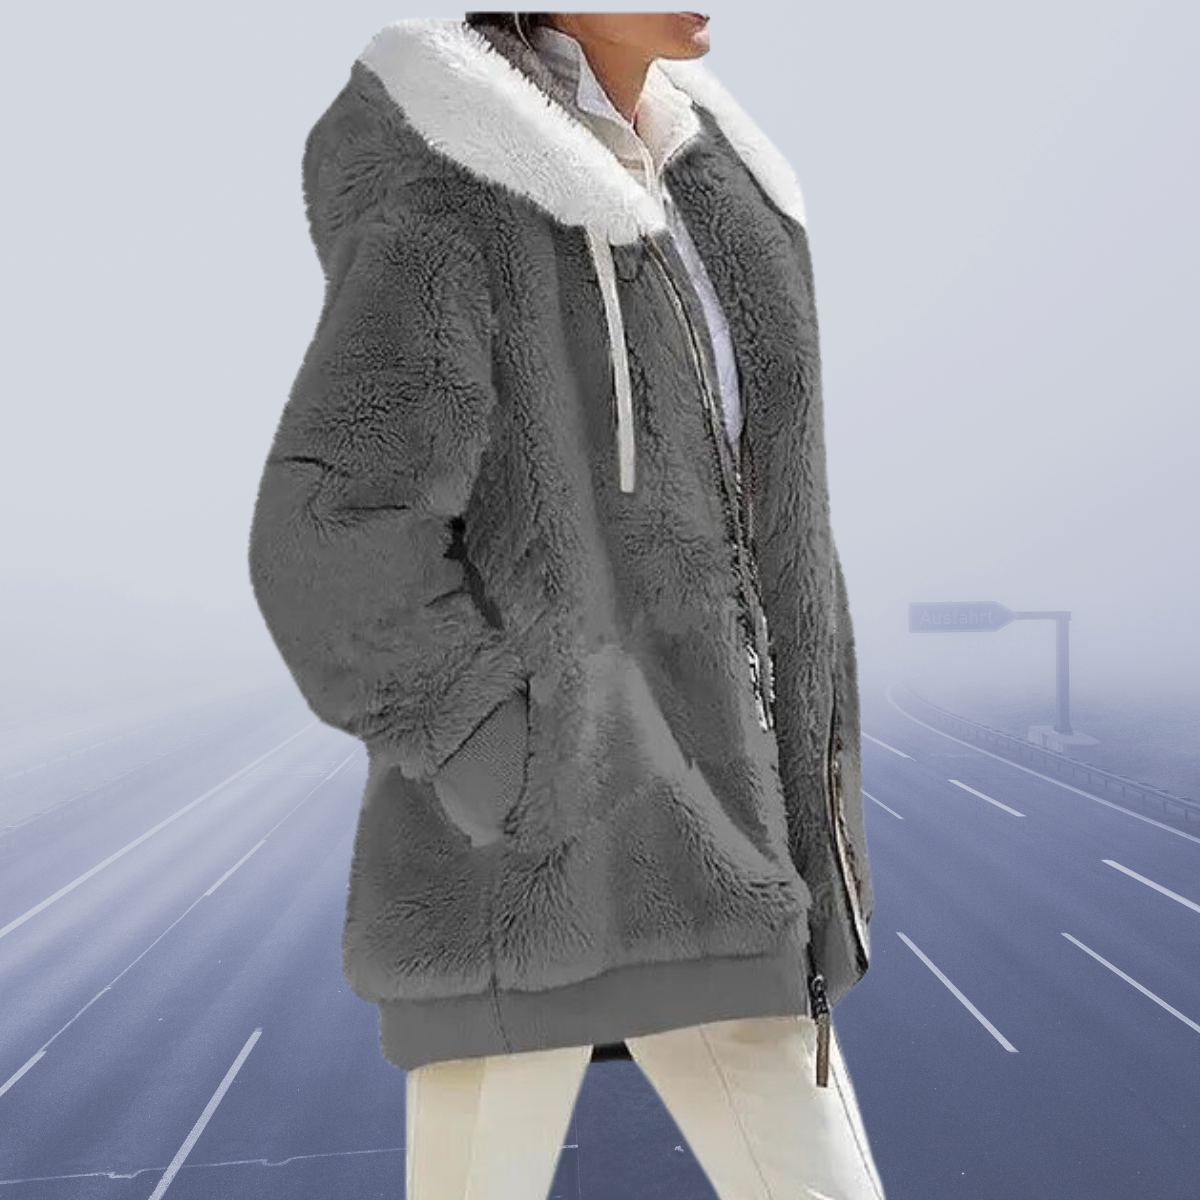 Calli - New everyday fleece hooded jacket